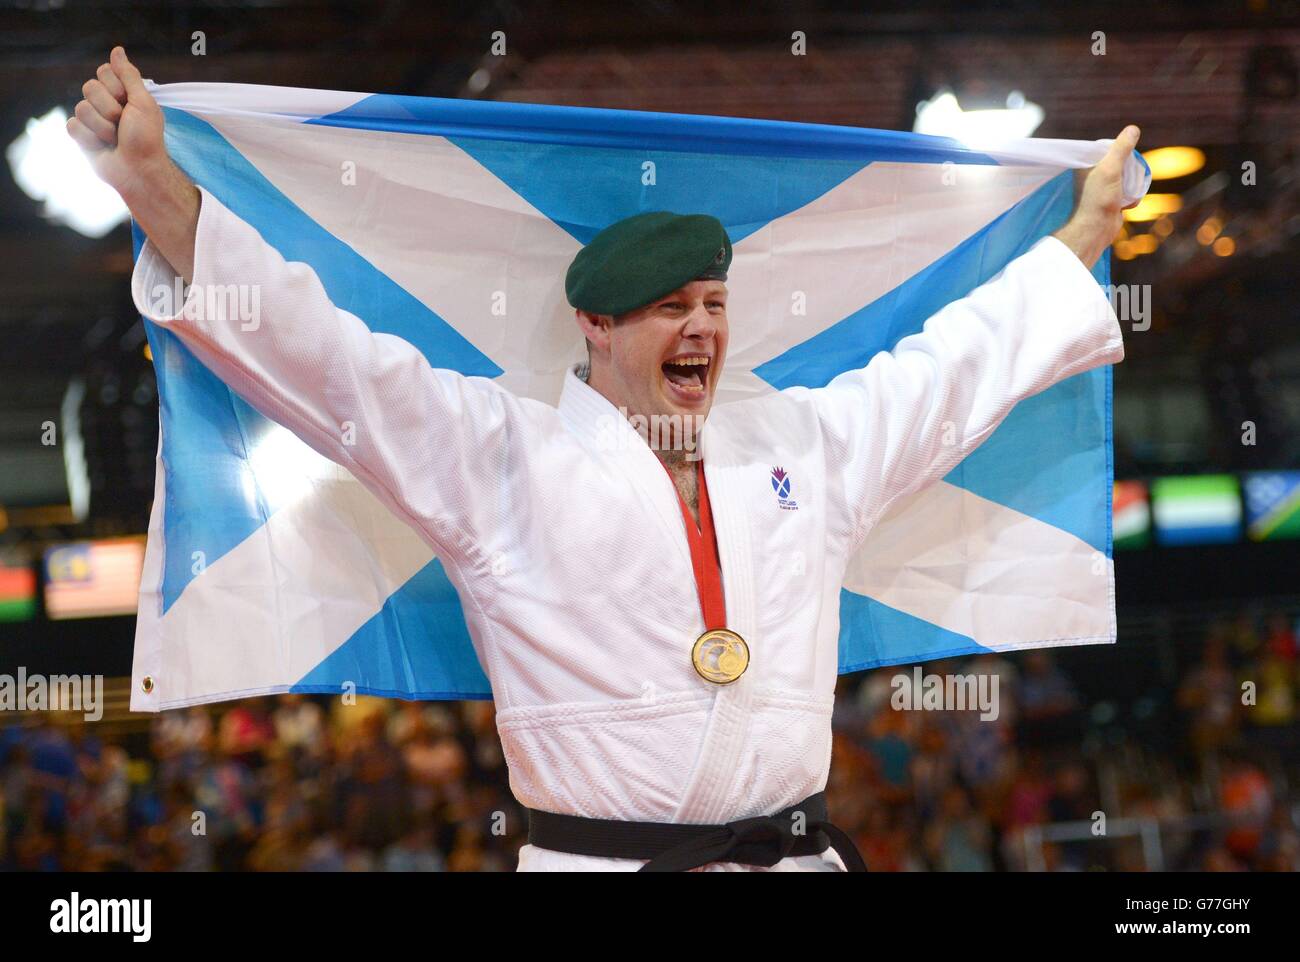 Goldmedaillengewinner Christopher Sherrington von Schottland nach seinem Männer +100kg Gold Medal Judo Contest beim SECC während der Commonwealth Games 2014 in Glasgow. Stockfoto